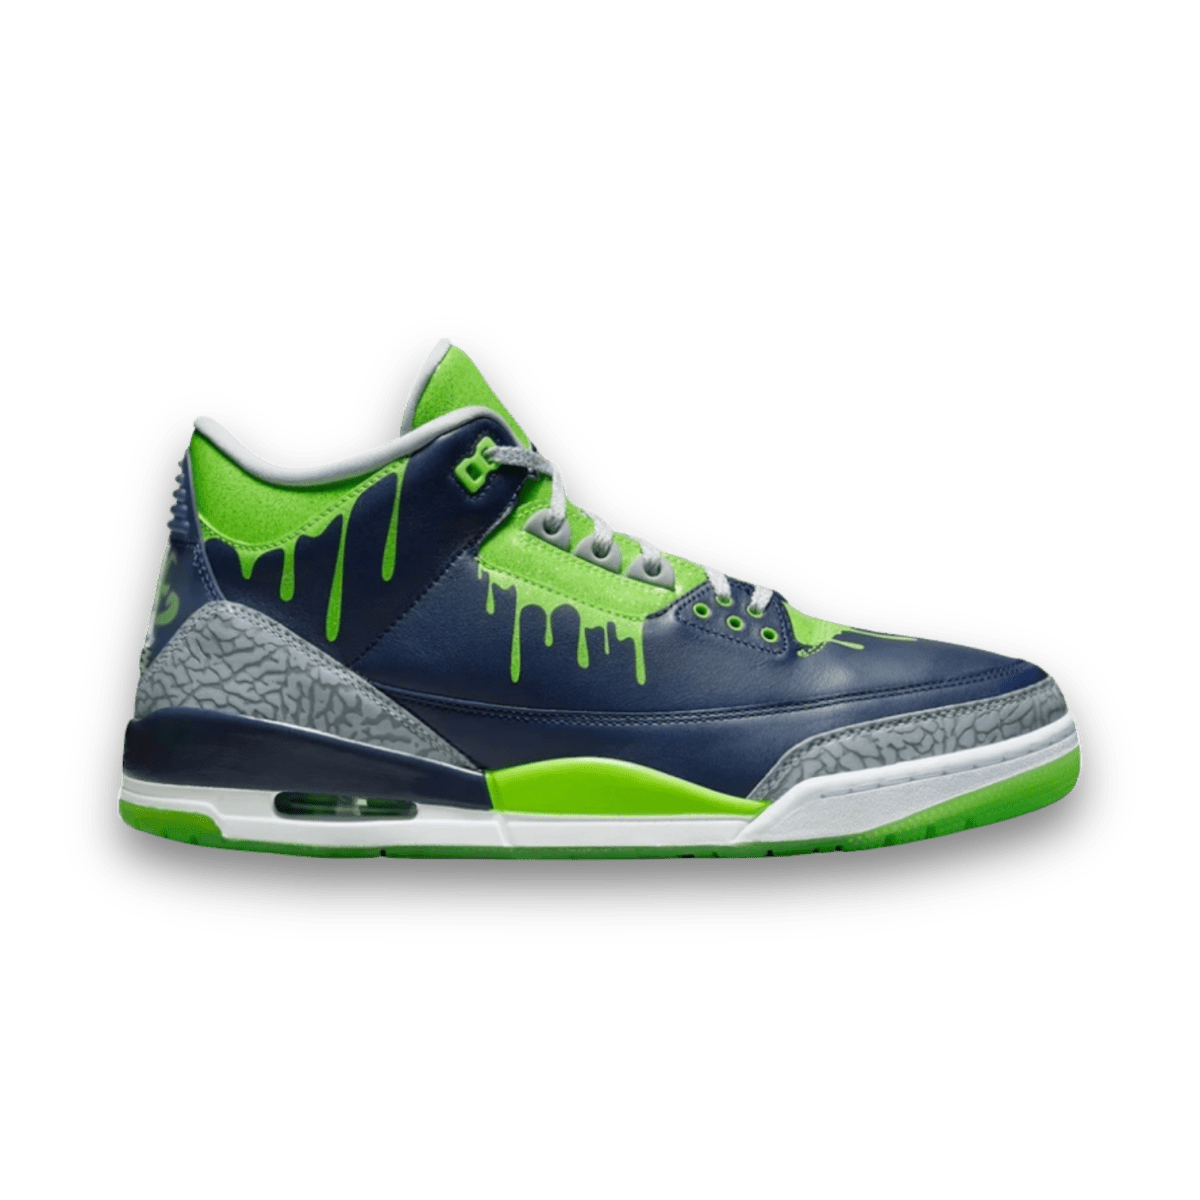 Air Jordan 3 Retro 'Doernbecher XIX' - Mid Sneaker - Jawns on Fire Sneakers & Streetwear